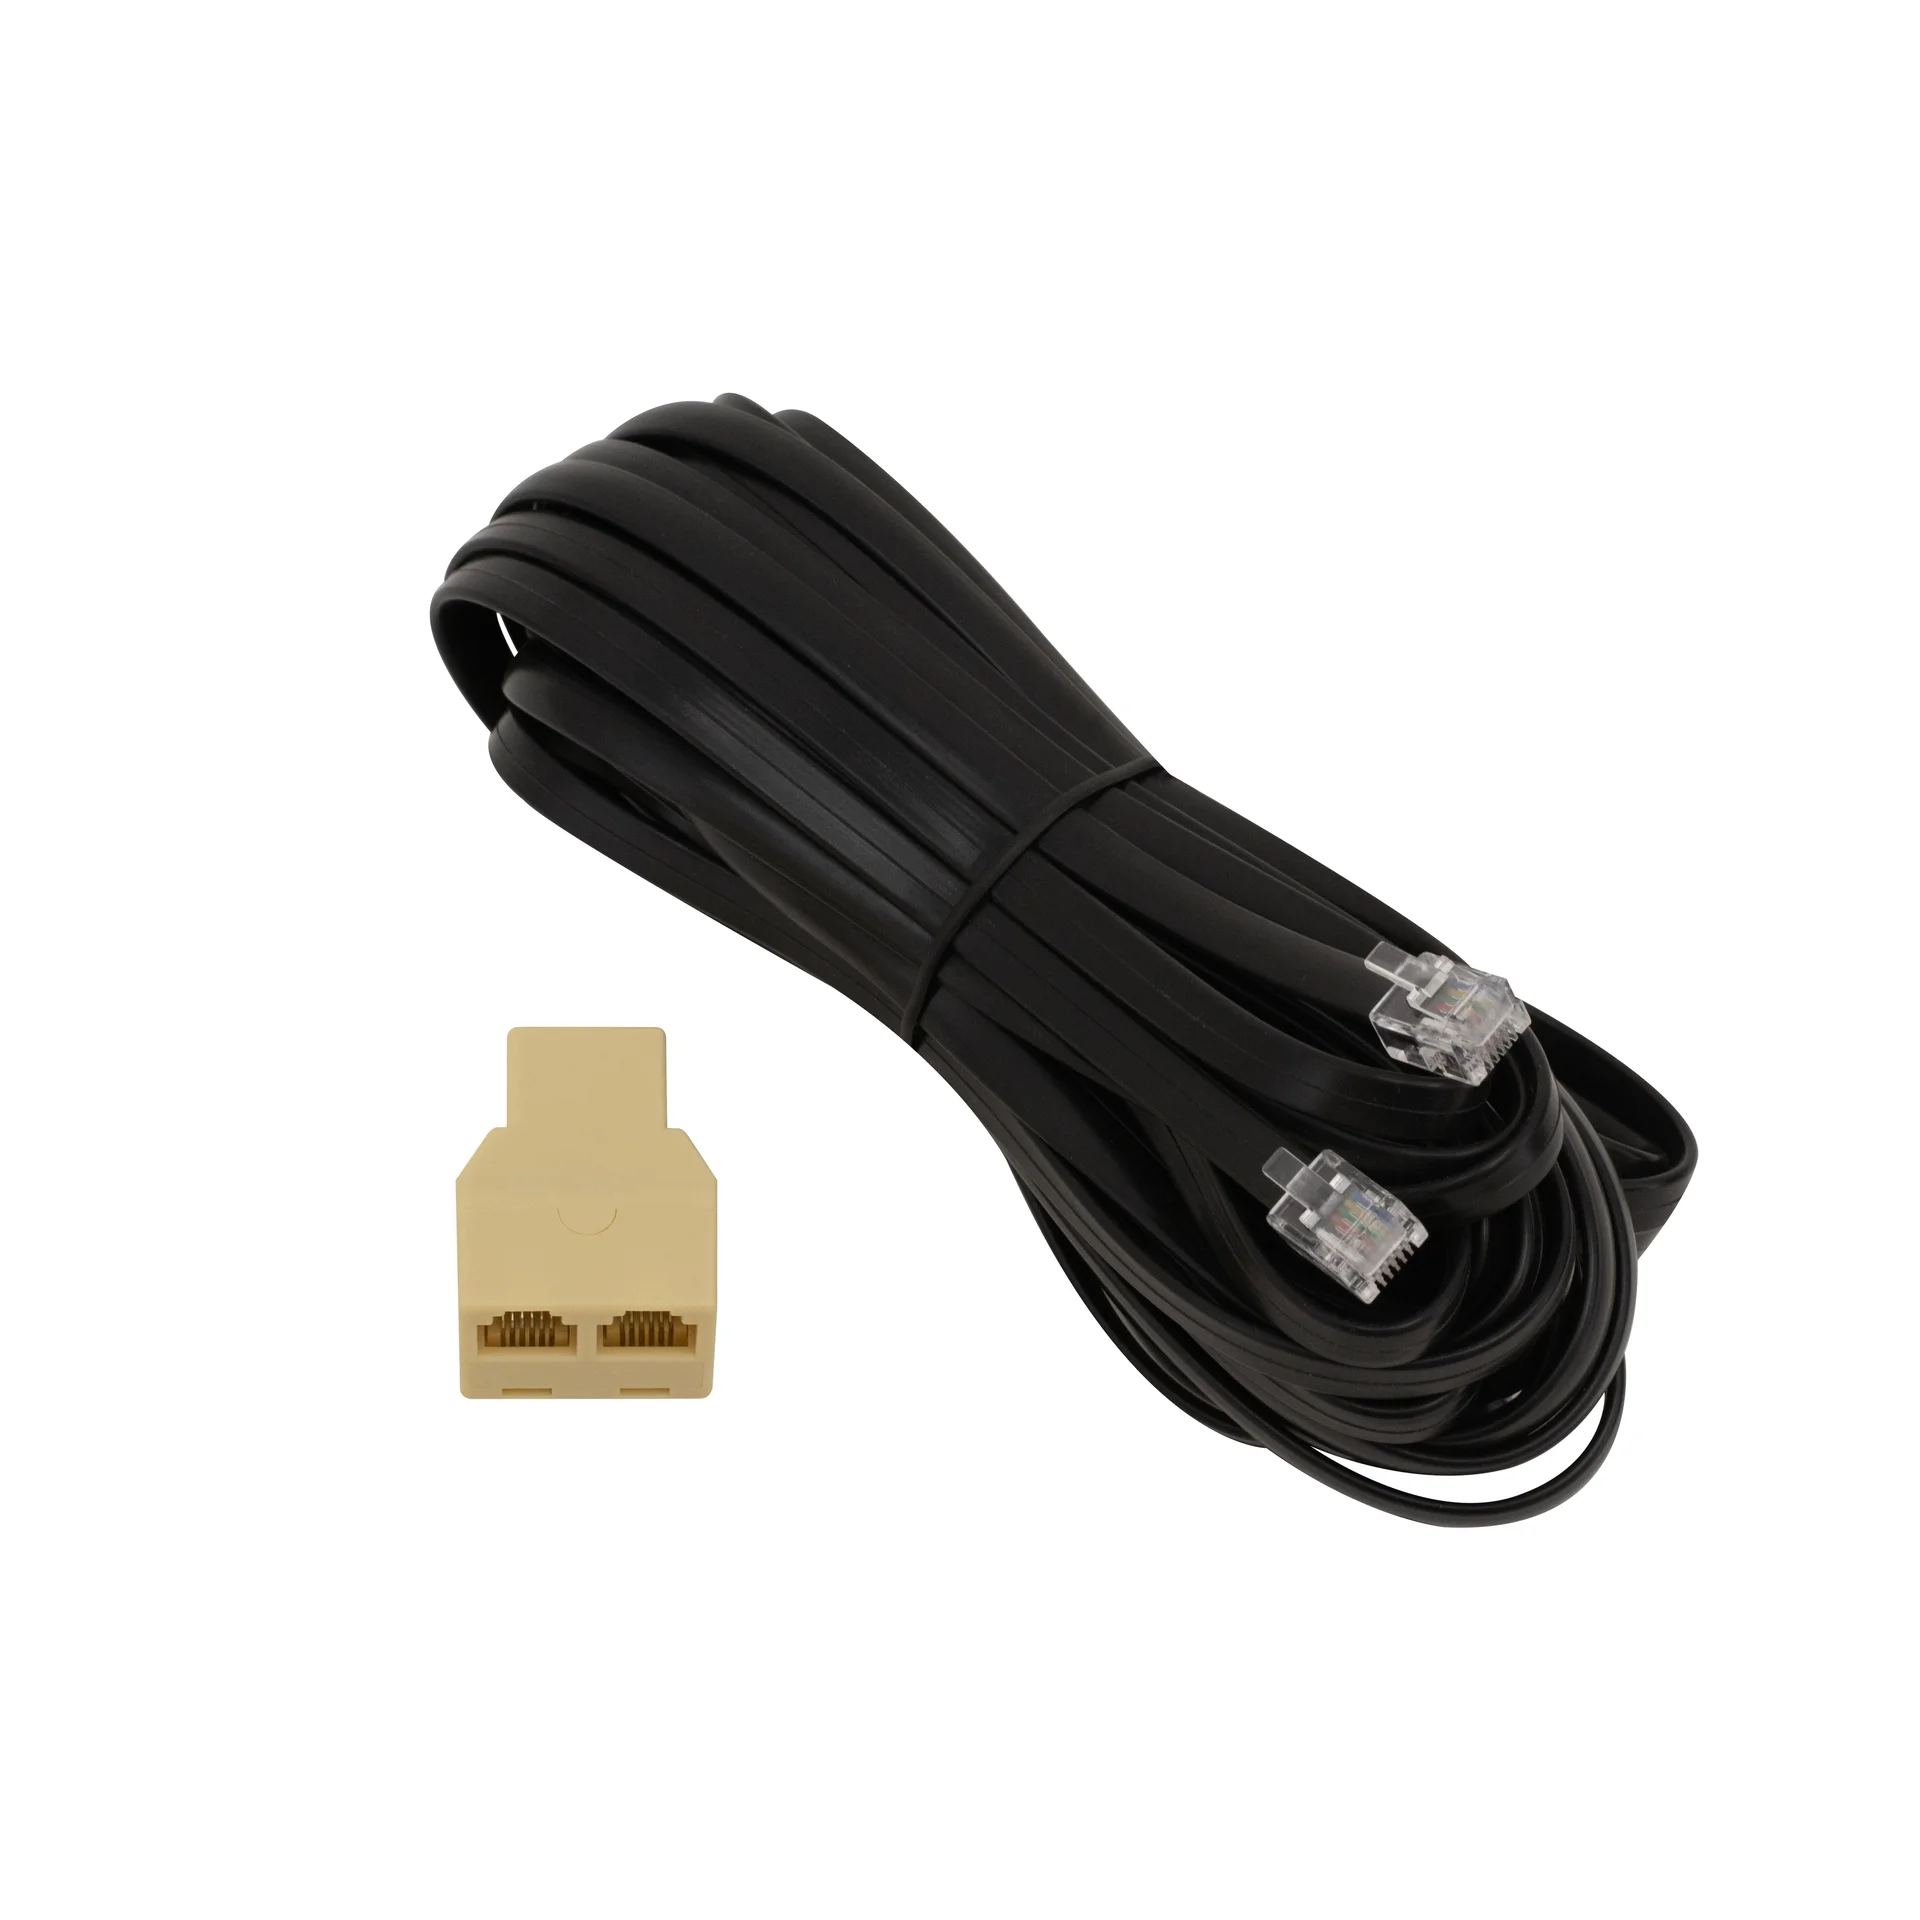 snr-cable-1wire-10m - Удлинитель кабеля 1-wire, 10м [59691] купить в Казани 			Удлинитель кабеля для датчика 1-wire представляет собой комплект из провода AWG24 (0,2 мм2) с вил